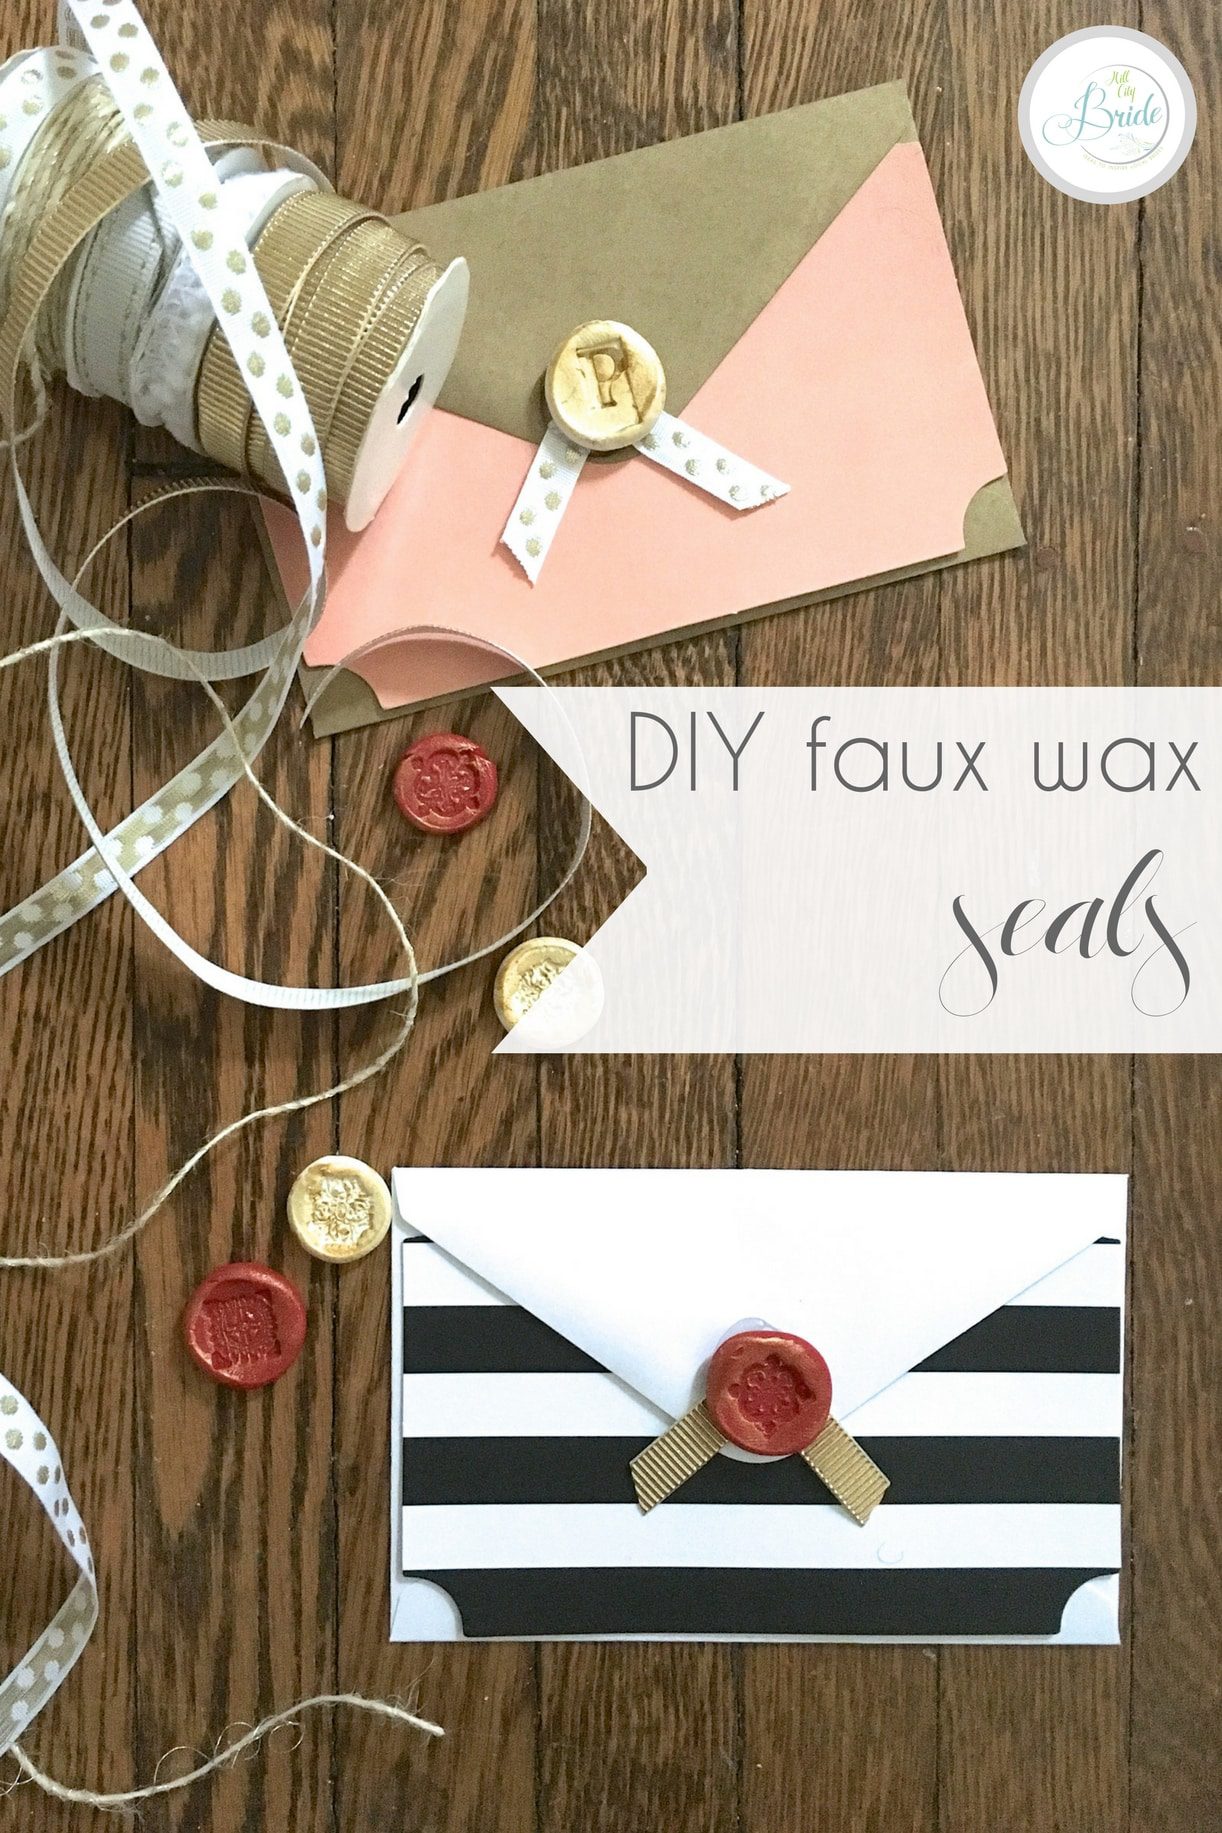 DIY Faux Wax Seals for Envelopes | Hill City Bride Virginia DIY Blog